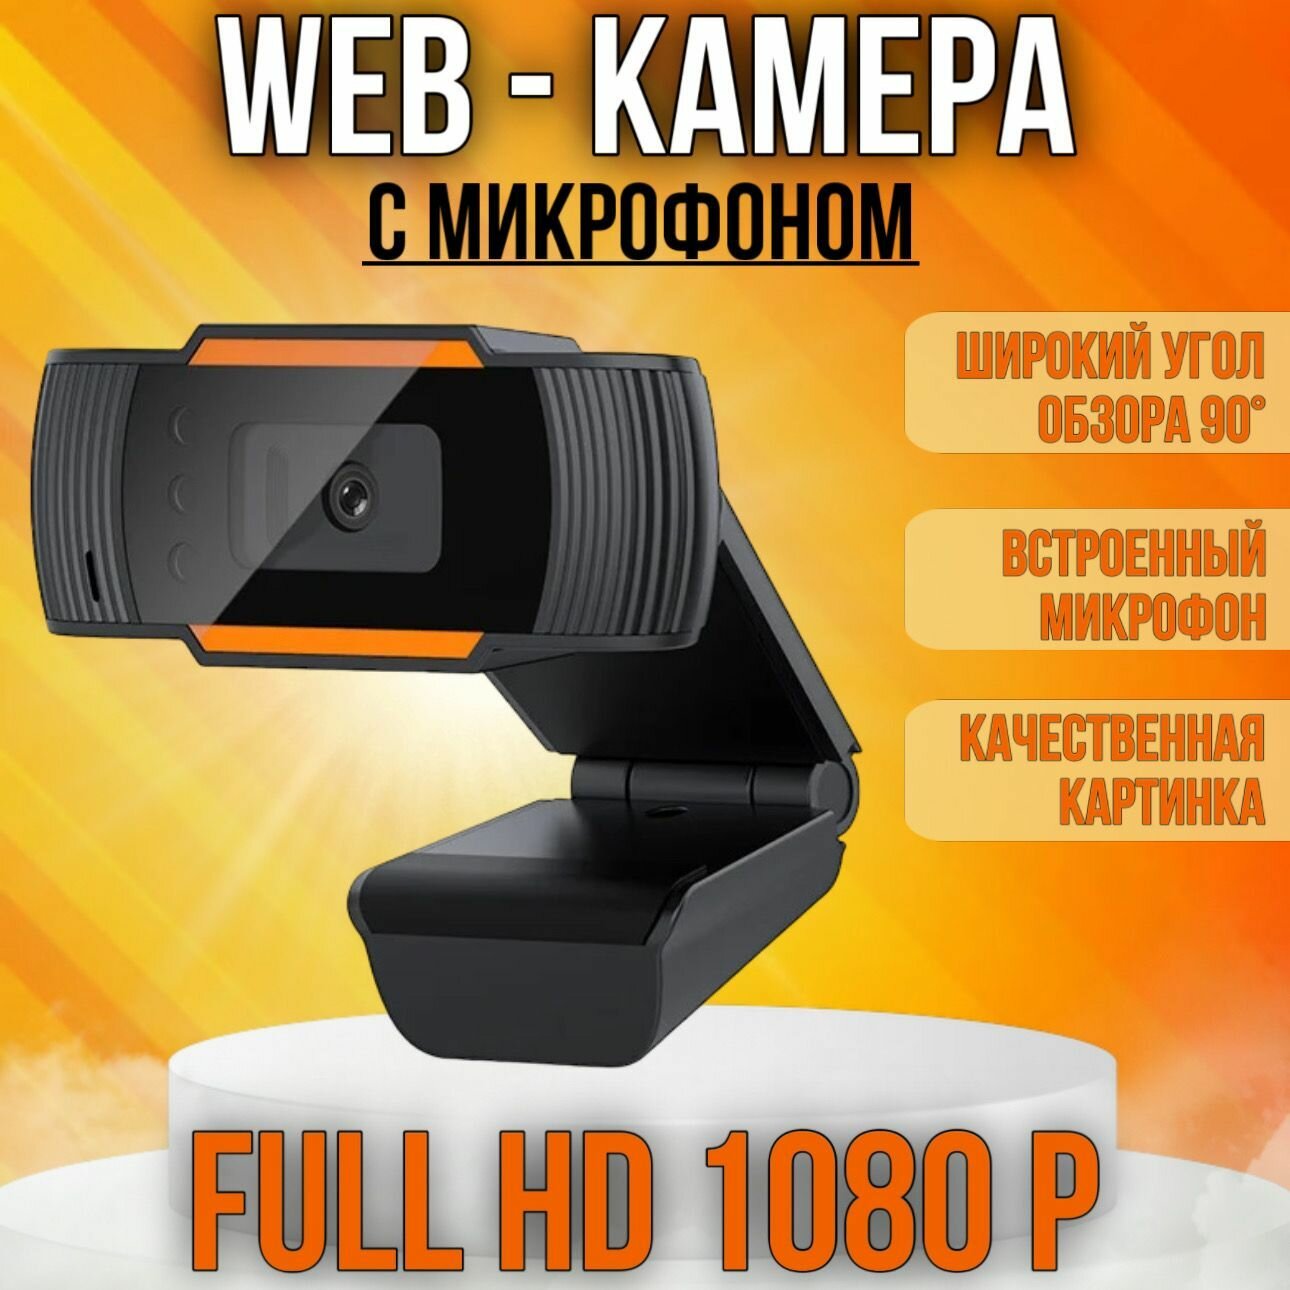 Веб-камера 1080P HD для компьютера и ноутбука со встроенный микрофоном